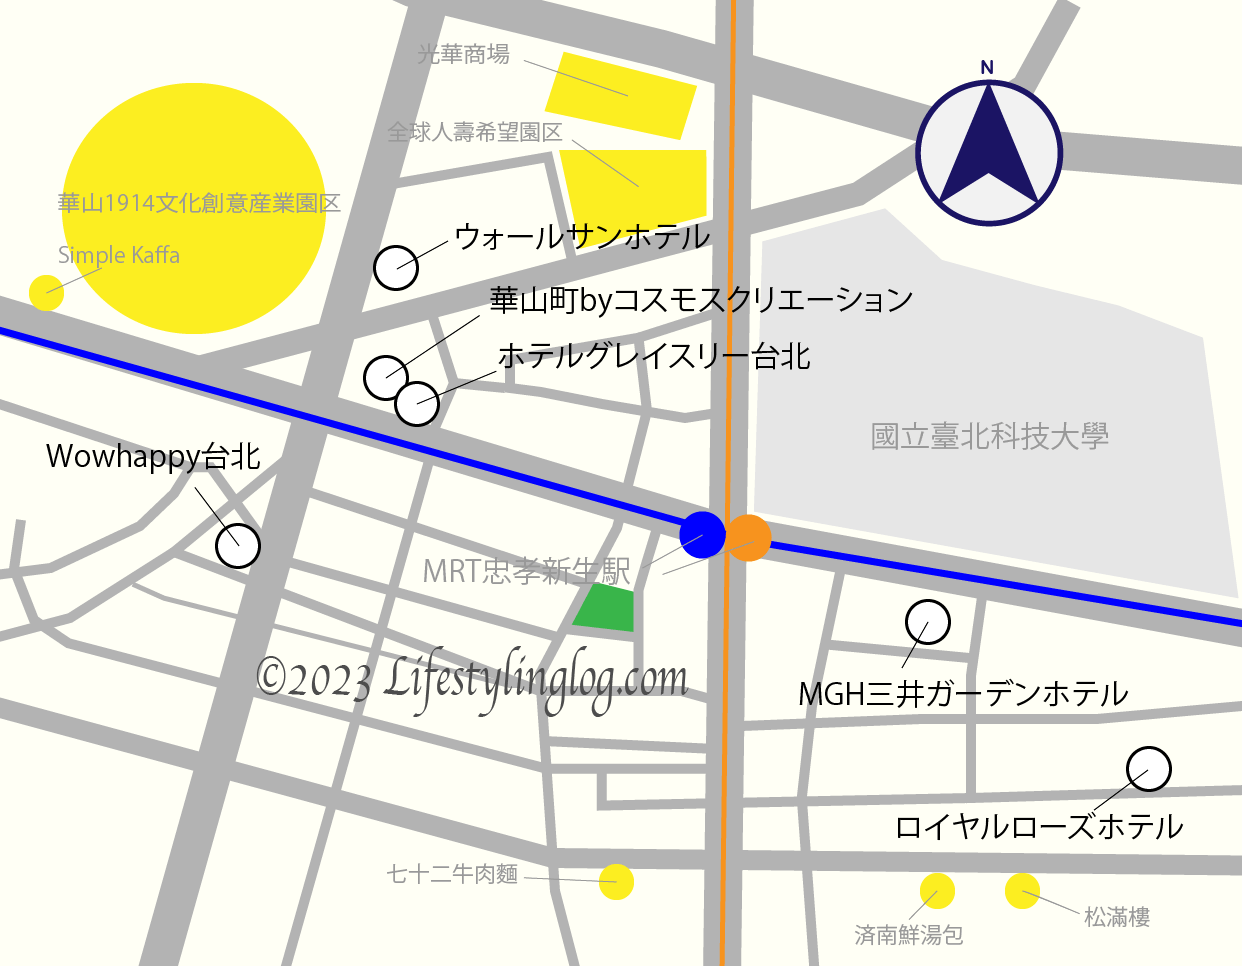 MRT忠孝新生駅周辺のホテルマップ